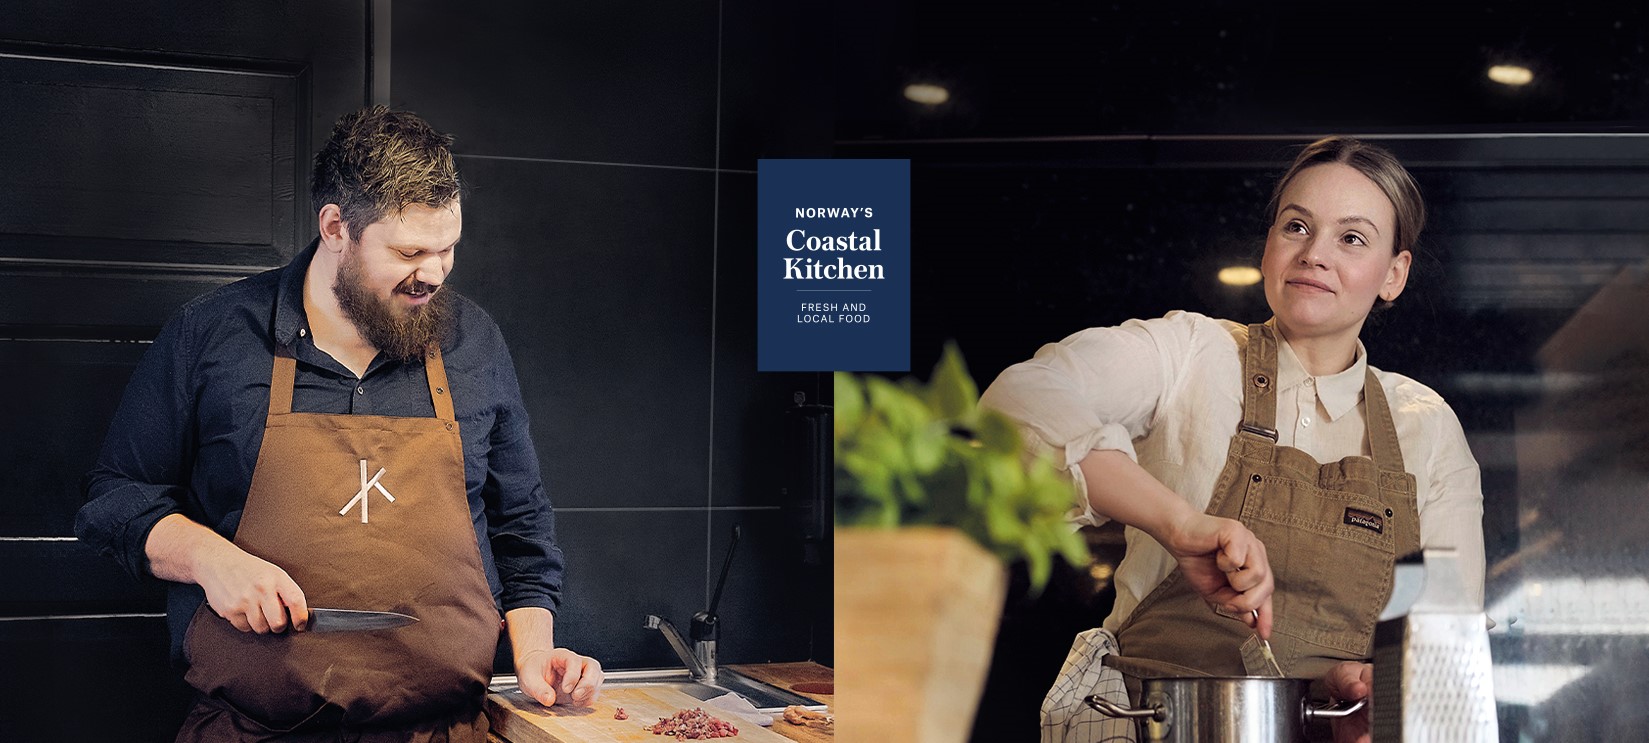 Unsere beiden kulinarischen Botschafter Ellingsen und Nässander in ihren Küchen.